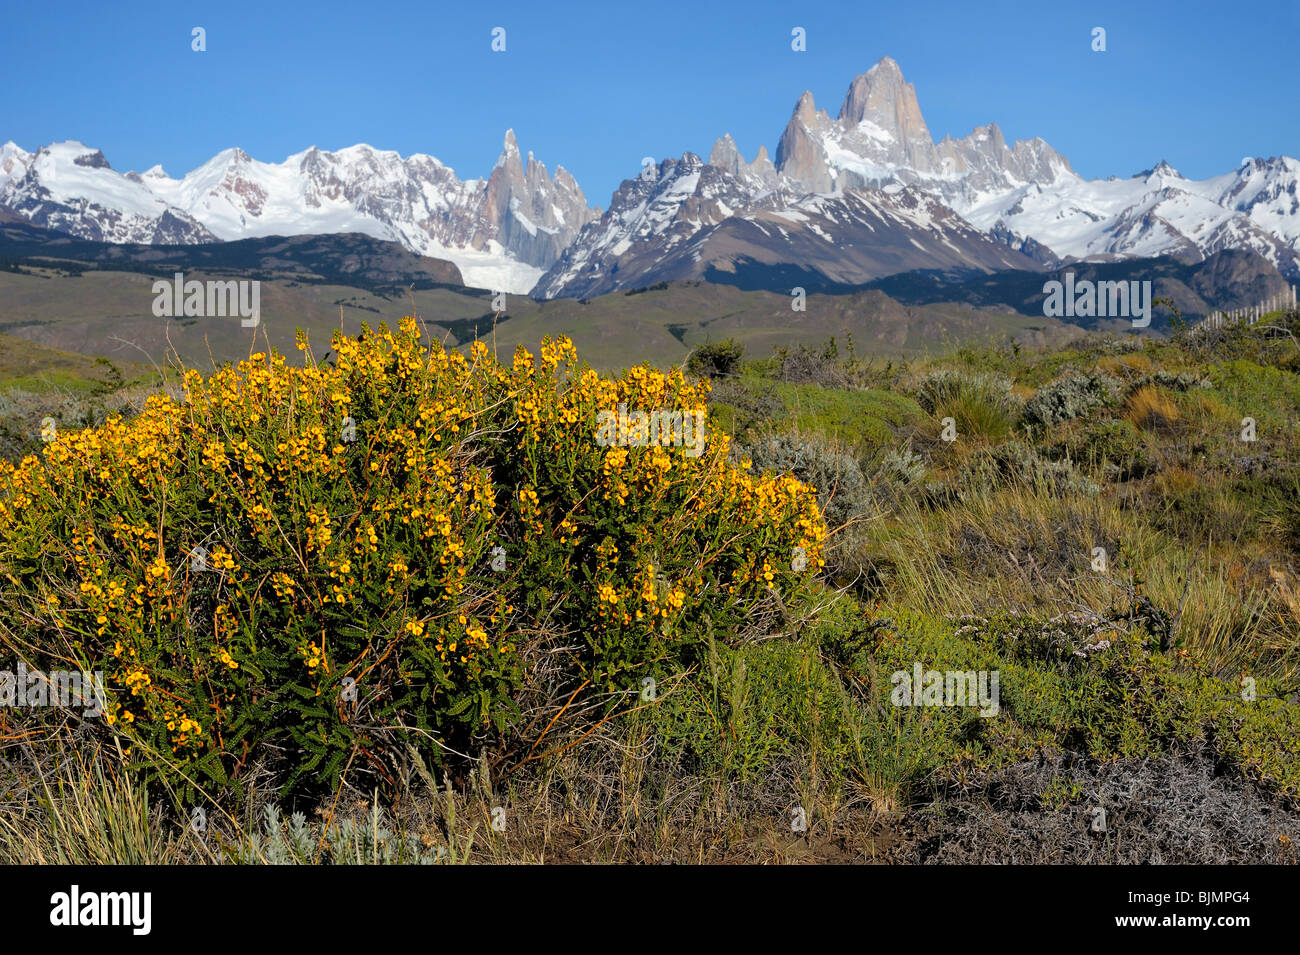 Mt. Cerro Torre et Mt. Fitz Roy, El Chalten, Andes, Patagonie, Argentine, Amérique du Sud Banque D'Images